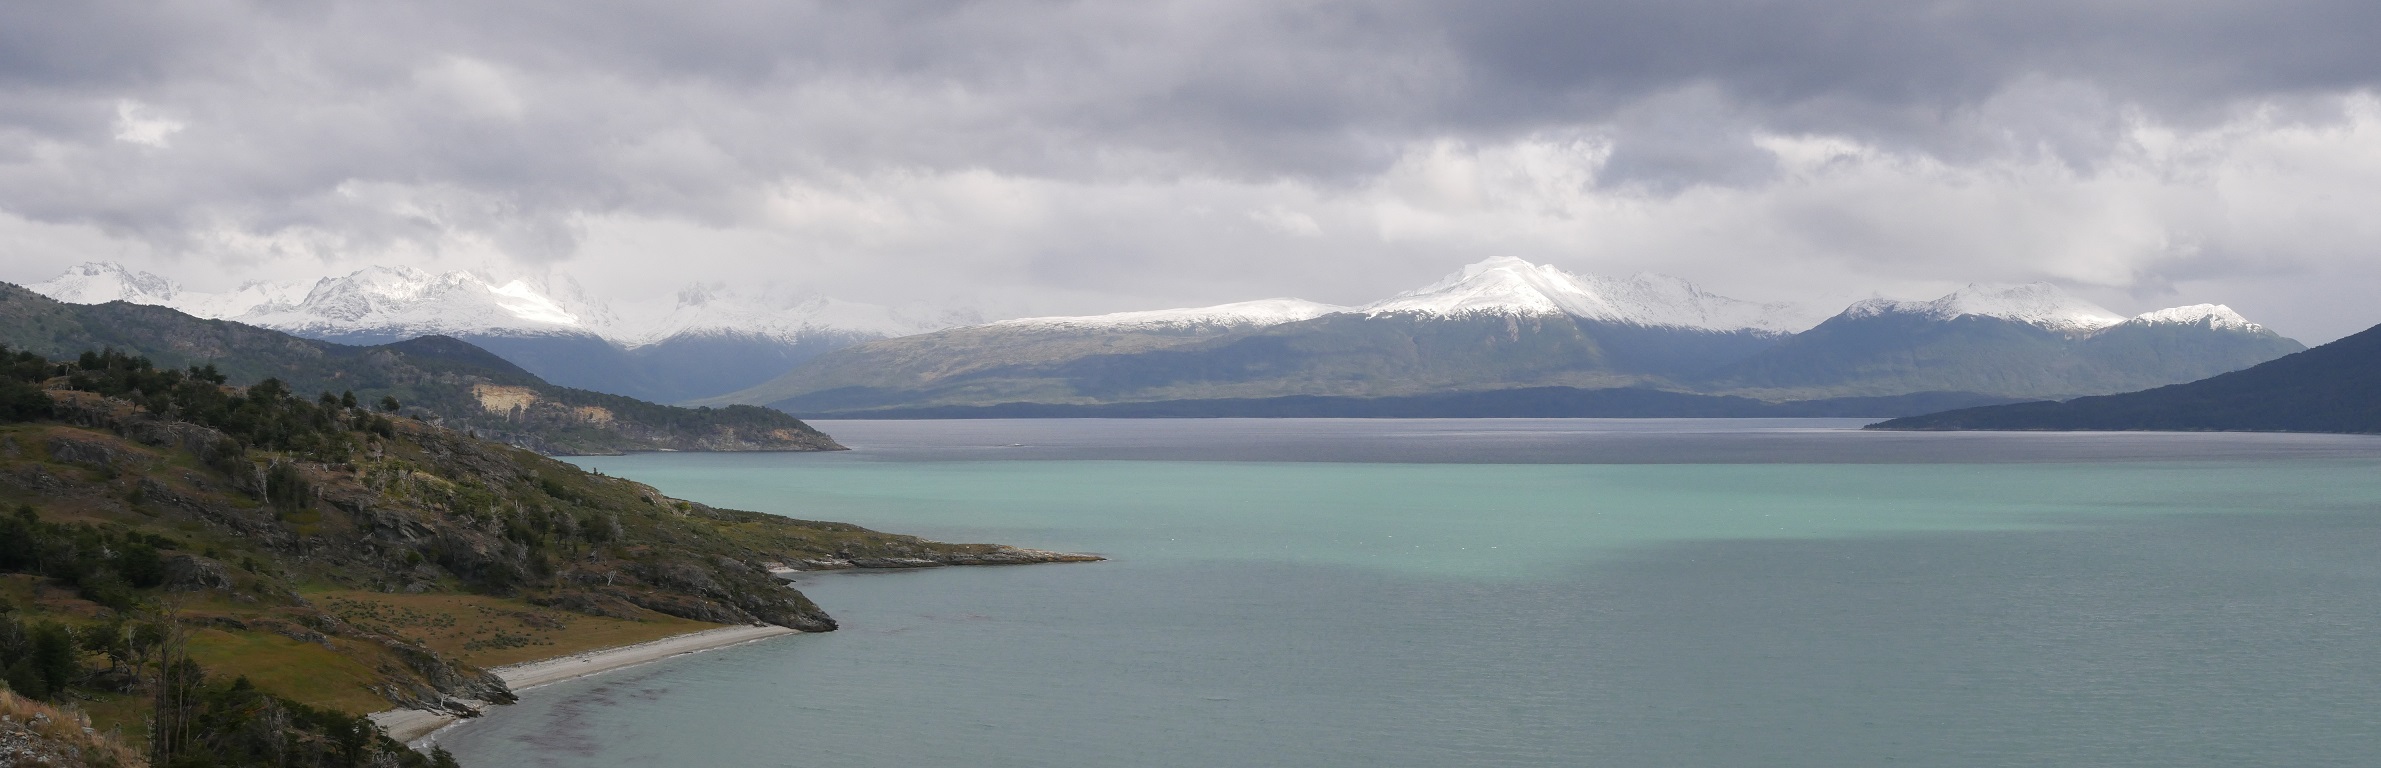 Blick aus der Bahía Yendegaia nach Süden auf den Beagle Kanal und die gegenüberliegende Insel Hoste. Das grüne Gletscherwasser des Rio Yendegaia mischt sich mit dem dunkleren Meerwasser; in den Hochlagen hat es geschneit.